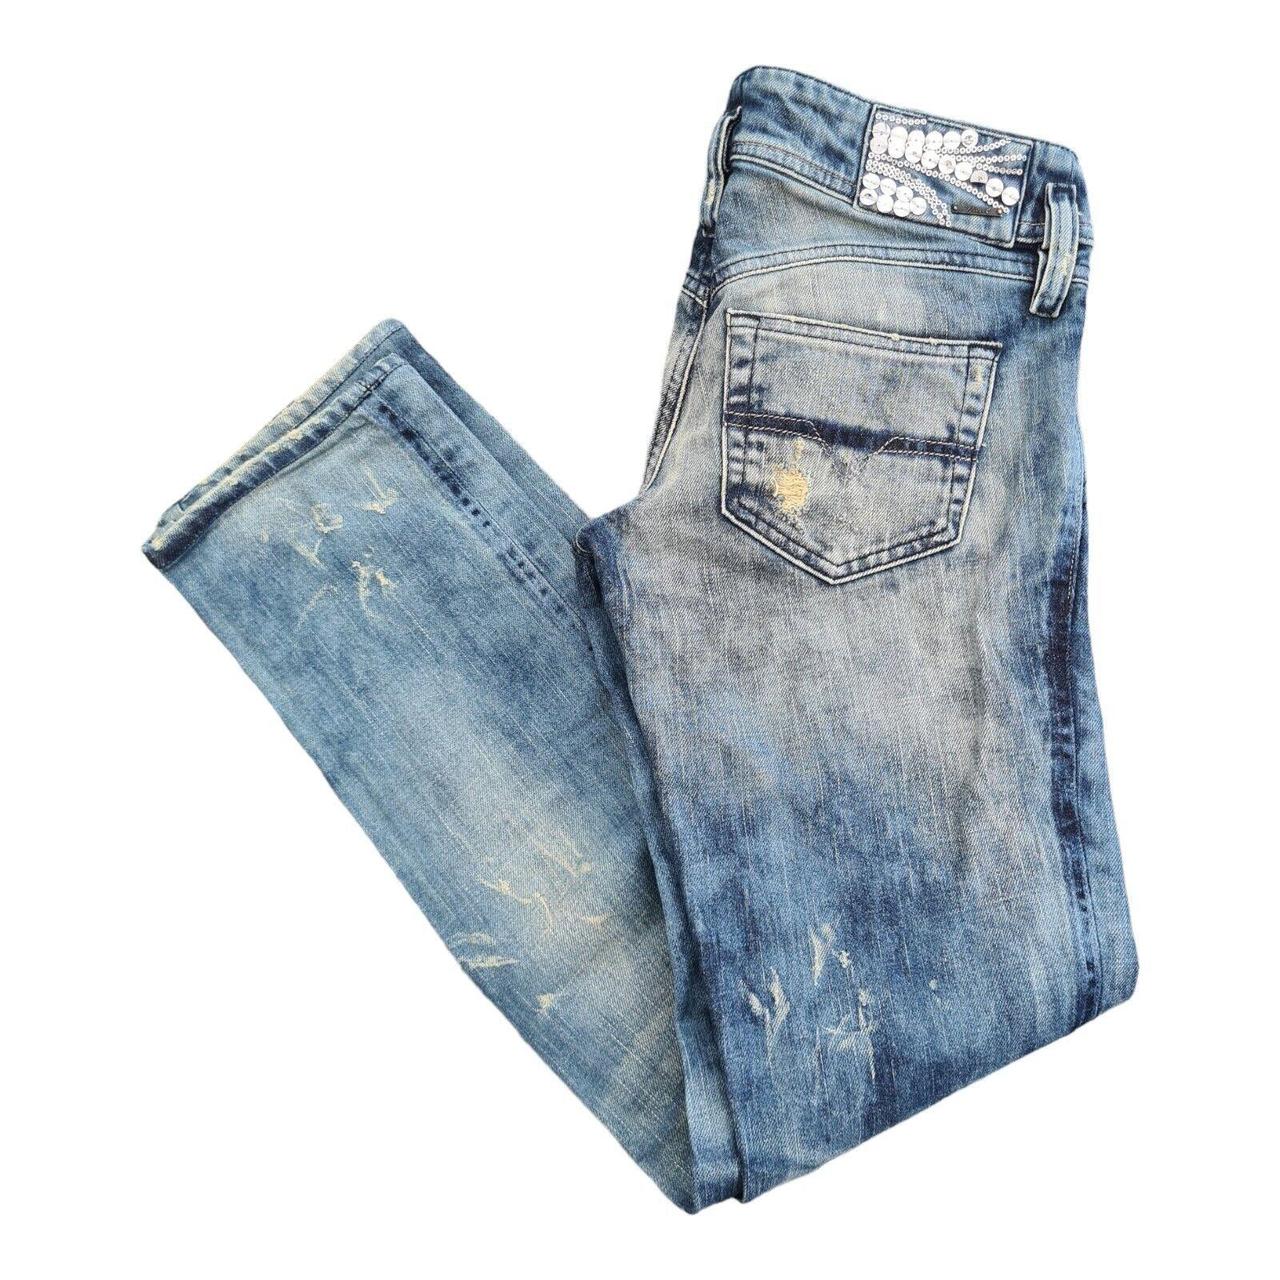 Vintage Diesel Matic Jeans 29X31 Blue Distressed... - Depop